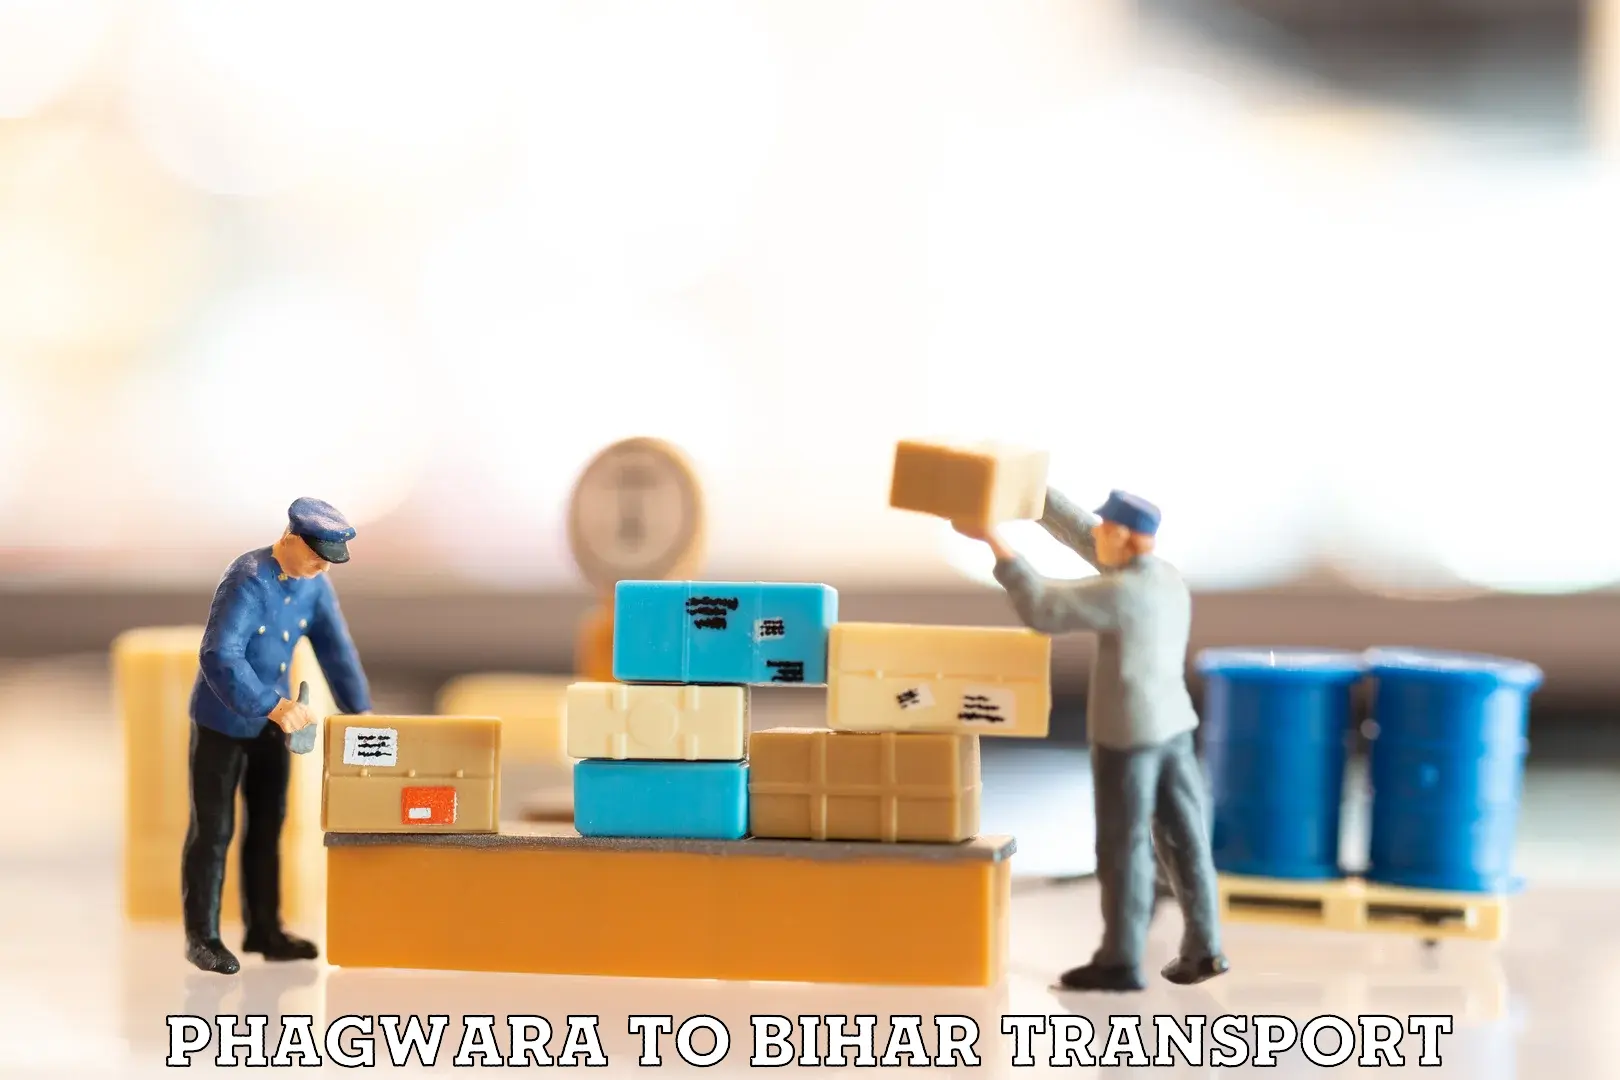 Delivery service Phagwara to Saharsa